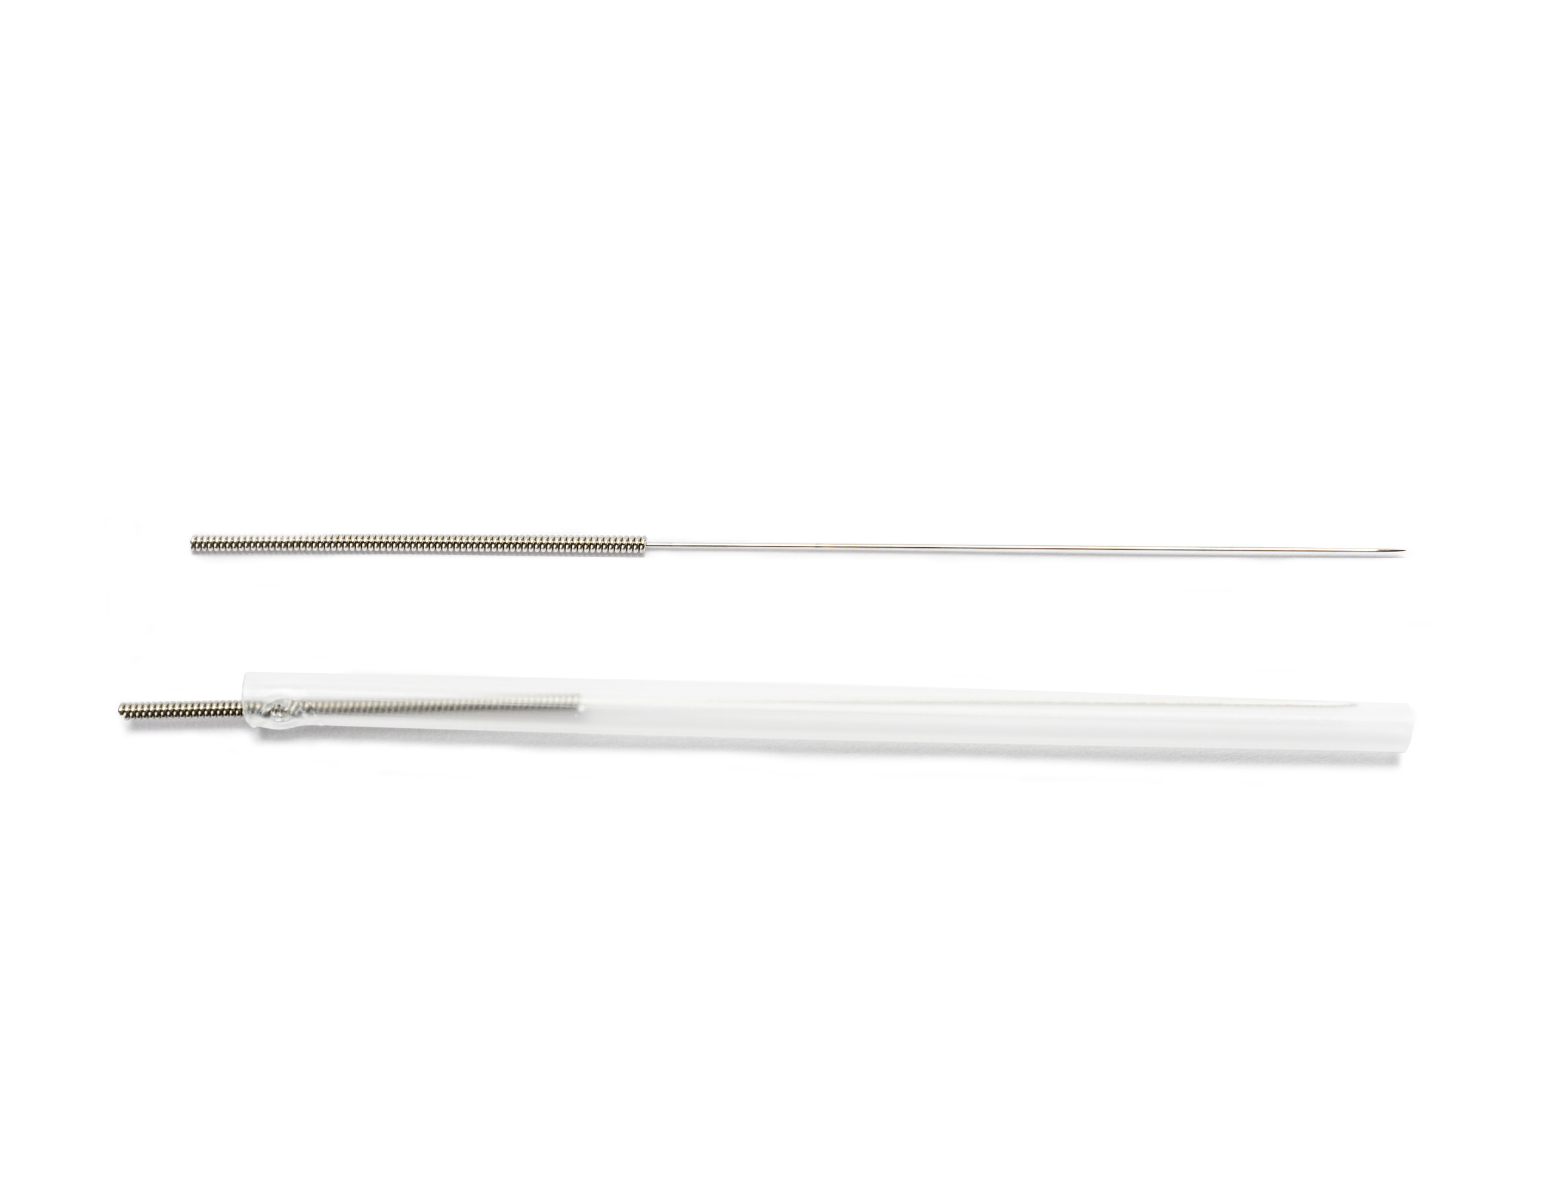 AguPunt APS Click aiguille dry needling - 0.25 x 25 mm (100 pcs)